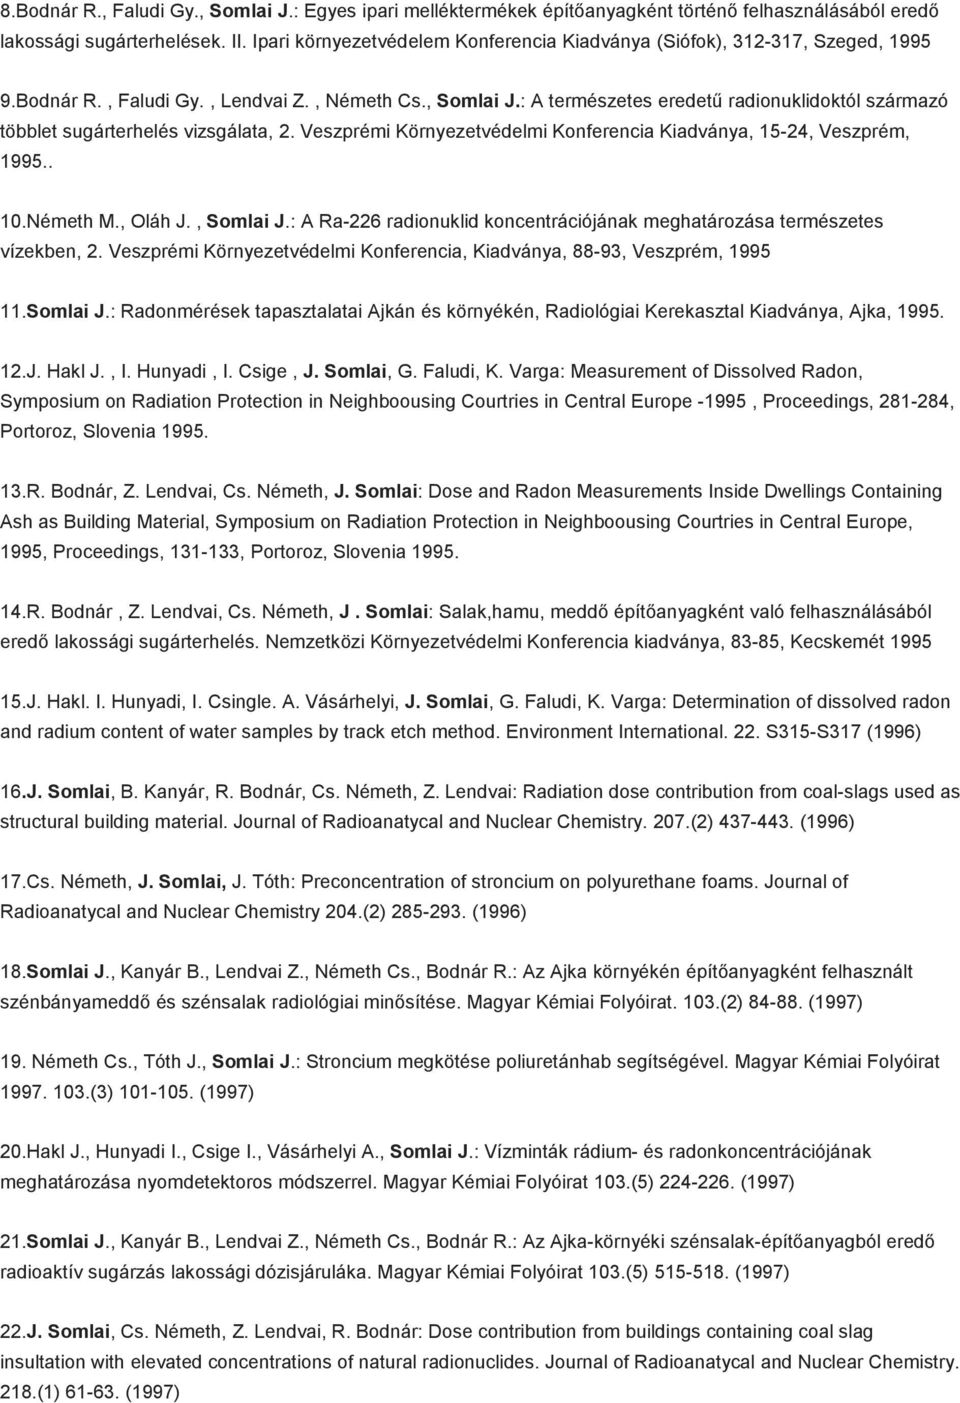 : A természetes eredetű radionuklidoktól származó többlet sugárterhelés vizsgálata, 2. Veszprémi Környezetvédelmi Konferencia Kiadványa, 15-24, Veszprém, 1995.. 10.Németh M., Oláh J., Somlai J.